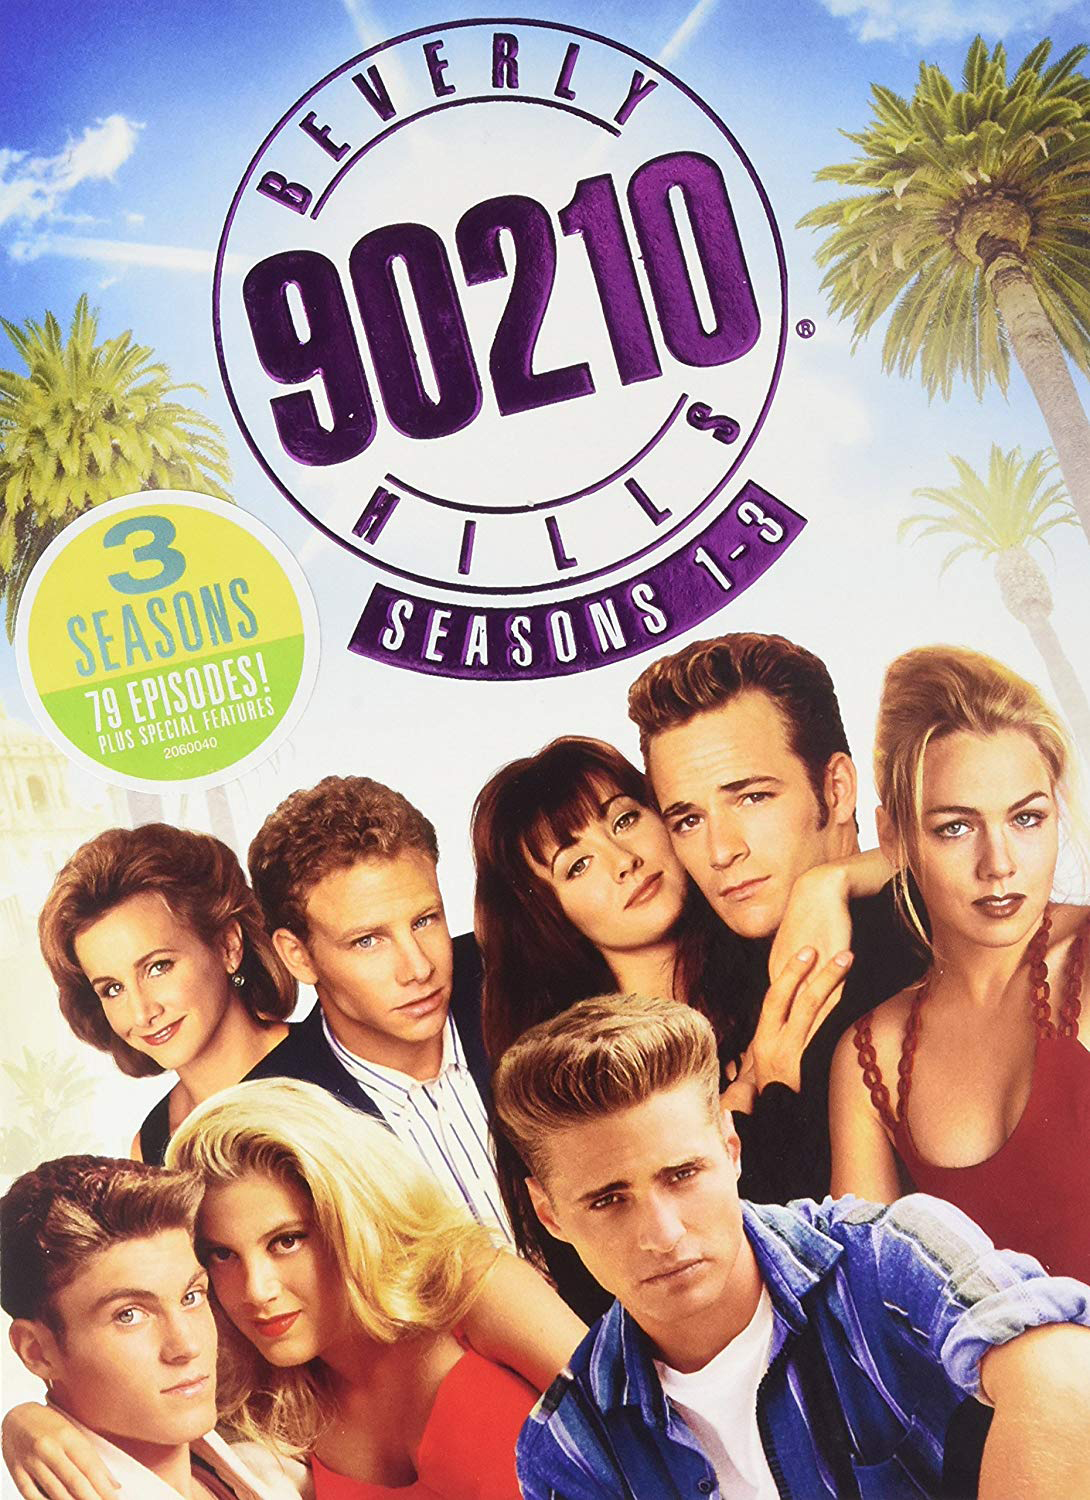 90210 episodes season 1